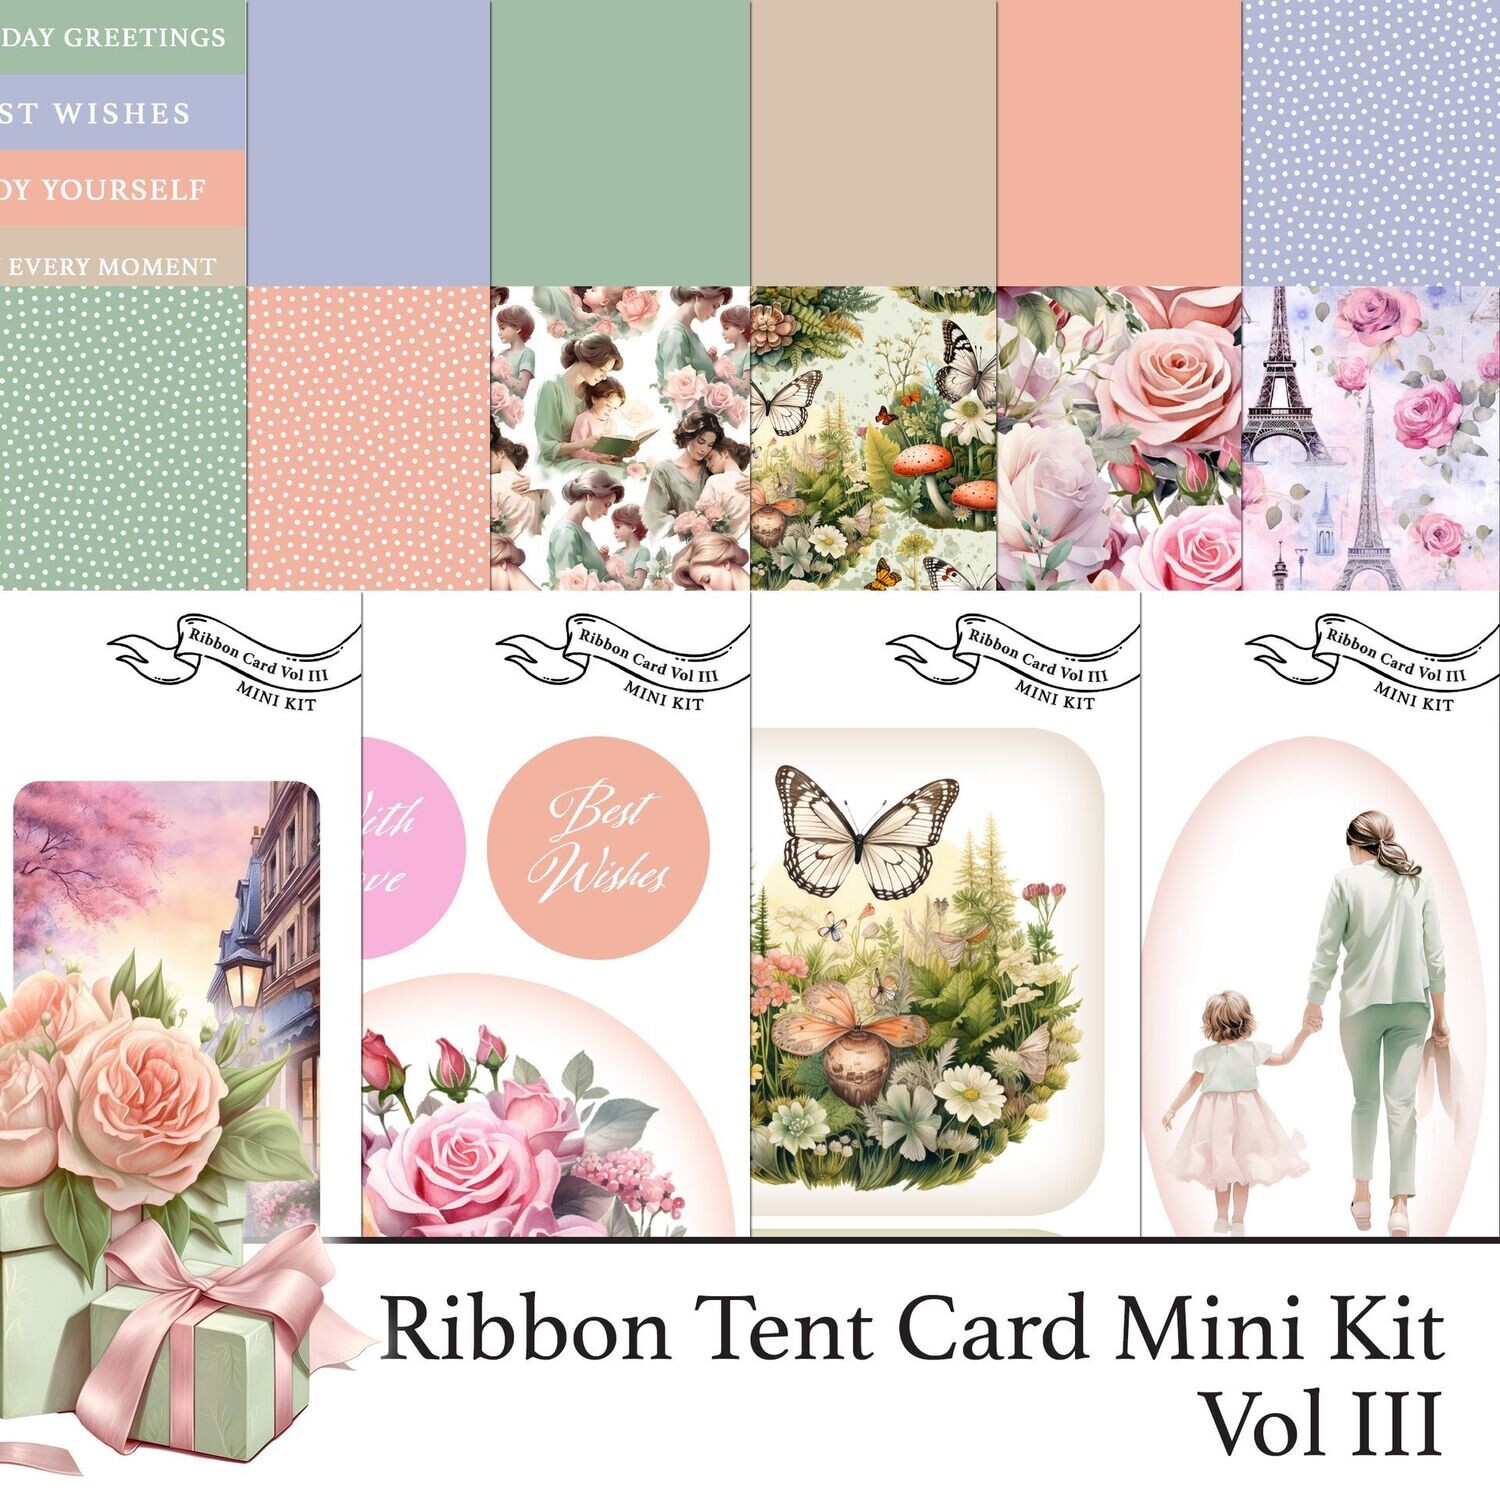 Ribbon Card Vol III Digital Kit